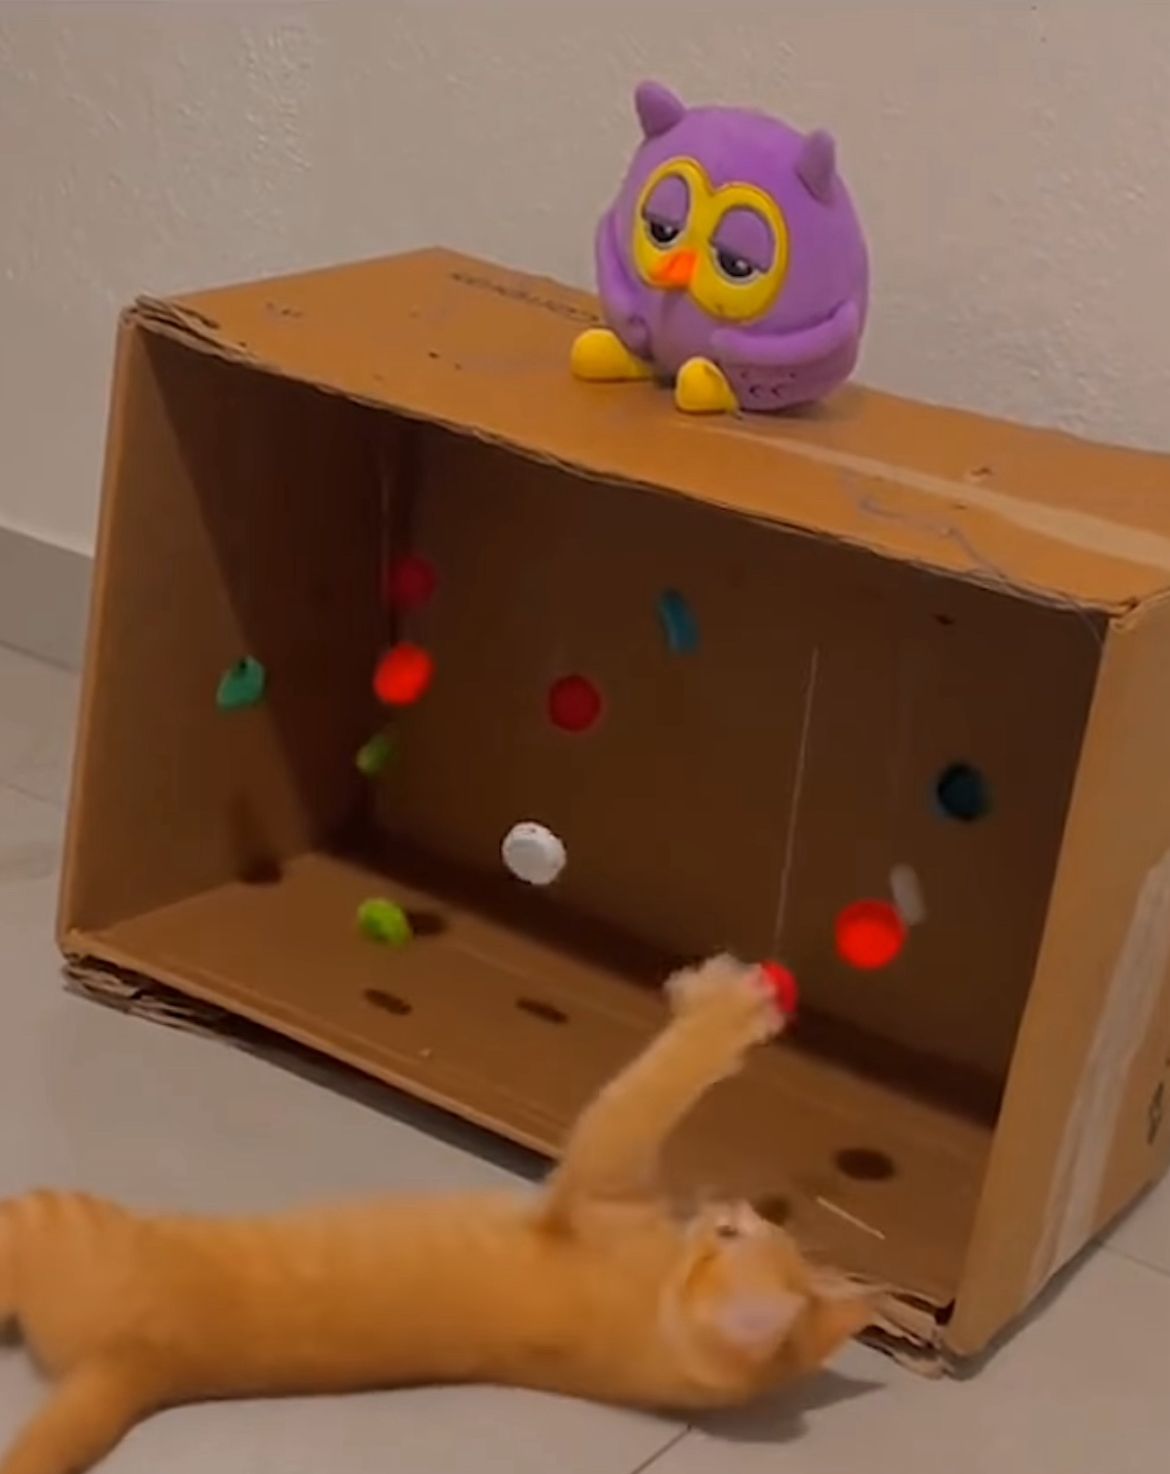 brinquedo caseiro para gato com caixa de papelão deixando felino entretido